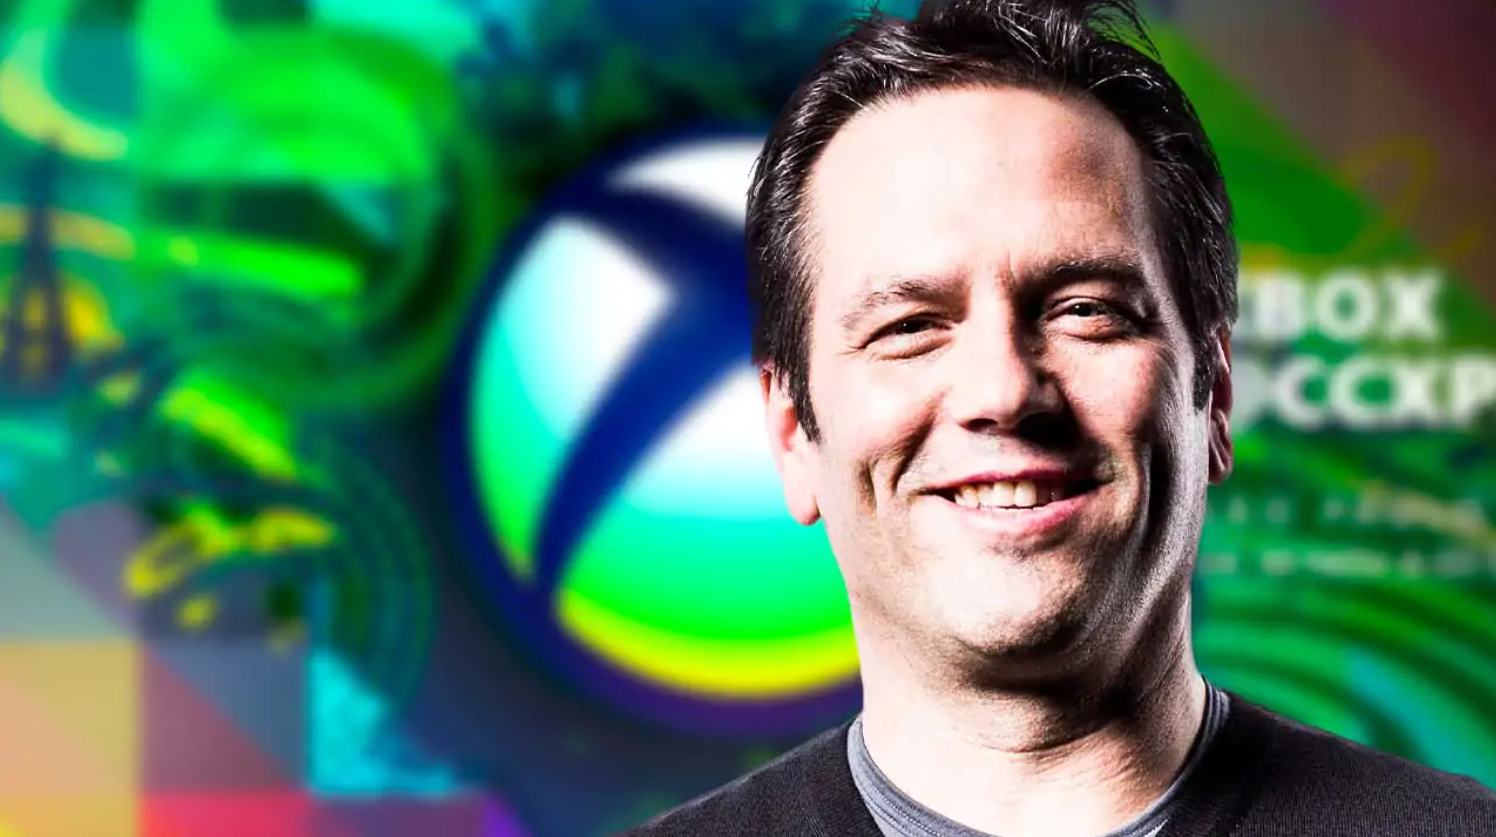 Xbox e Phil Spencer Marcam Gigante Presença na CCXP 2023 com